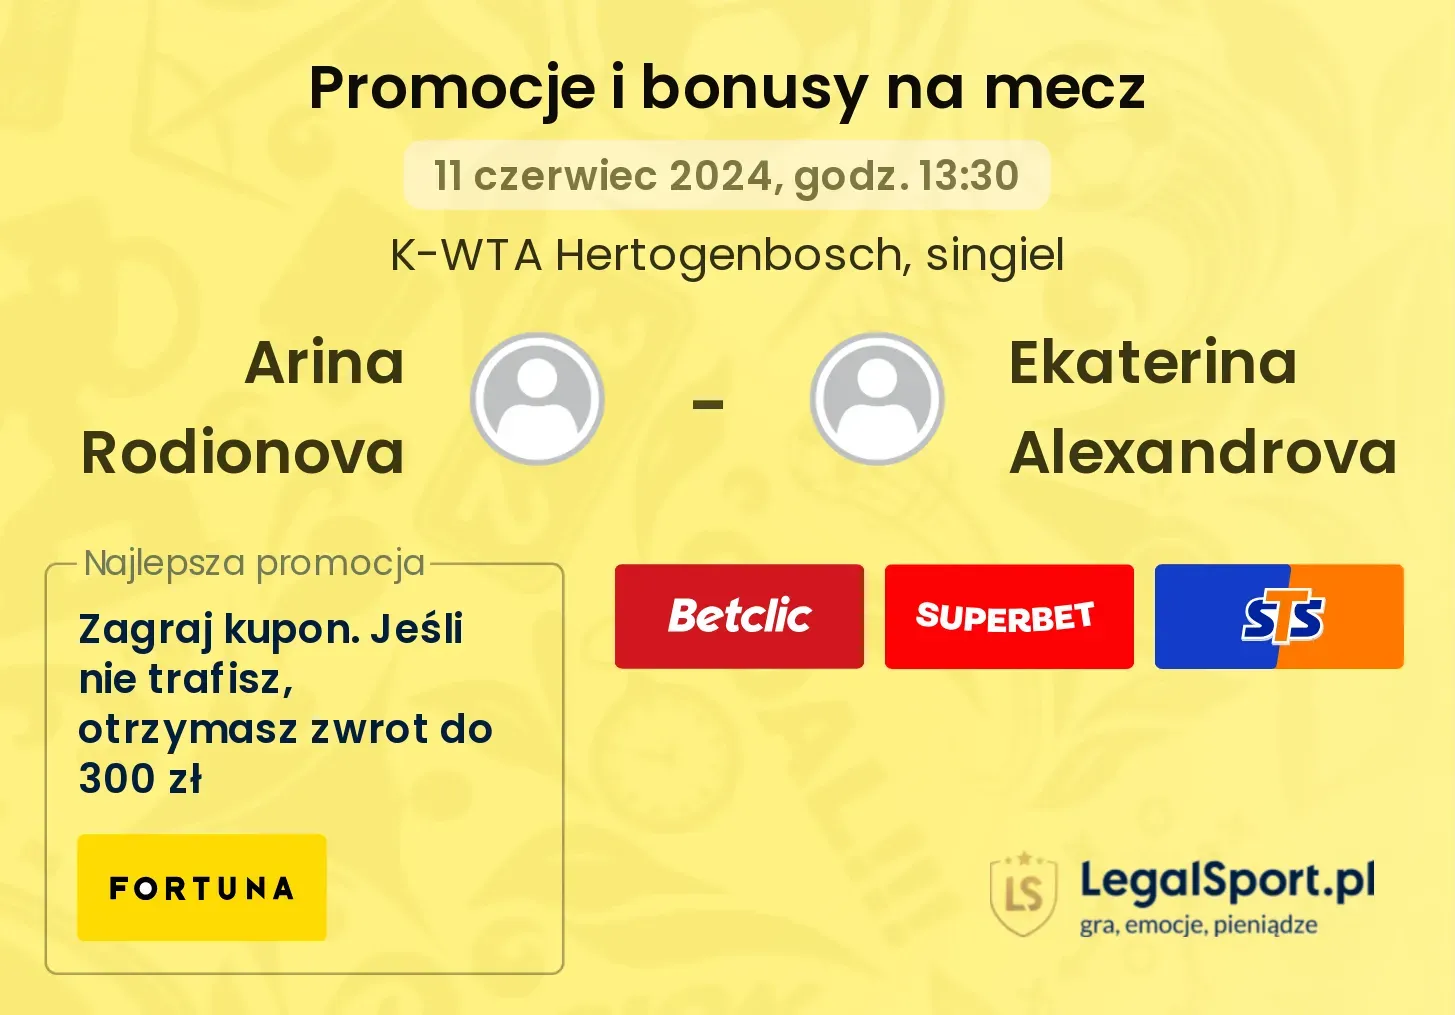 Arina Rodionova - Ekaterina Alexandrova promocje bonusy na mecz